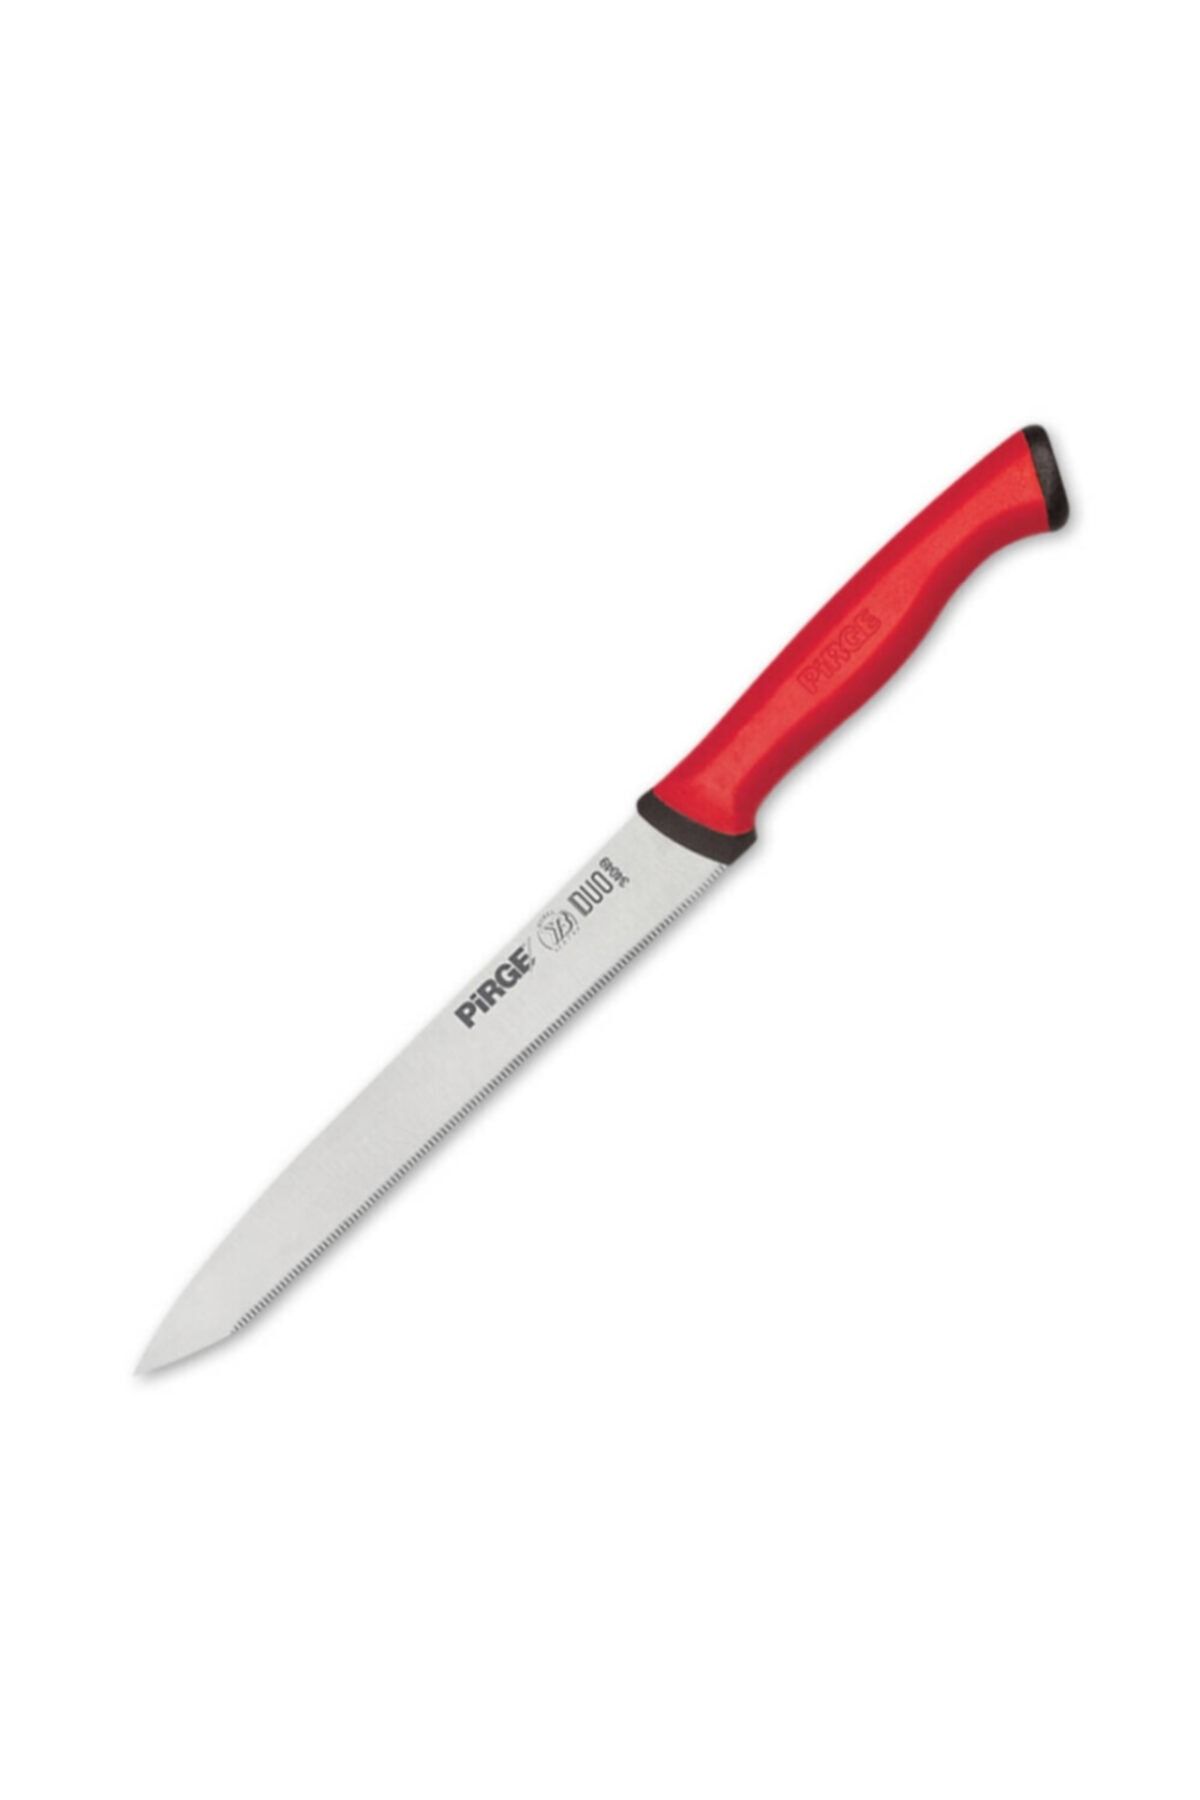 Pirge Duo Sebze Bıçağı Dişli Sivri 13,5 cm Kırmızı Saplı 34049